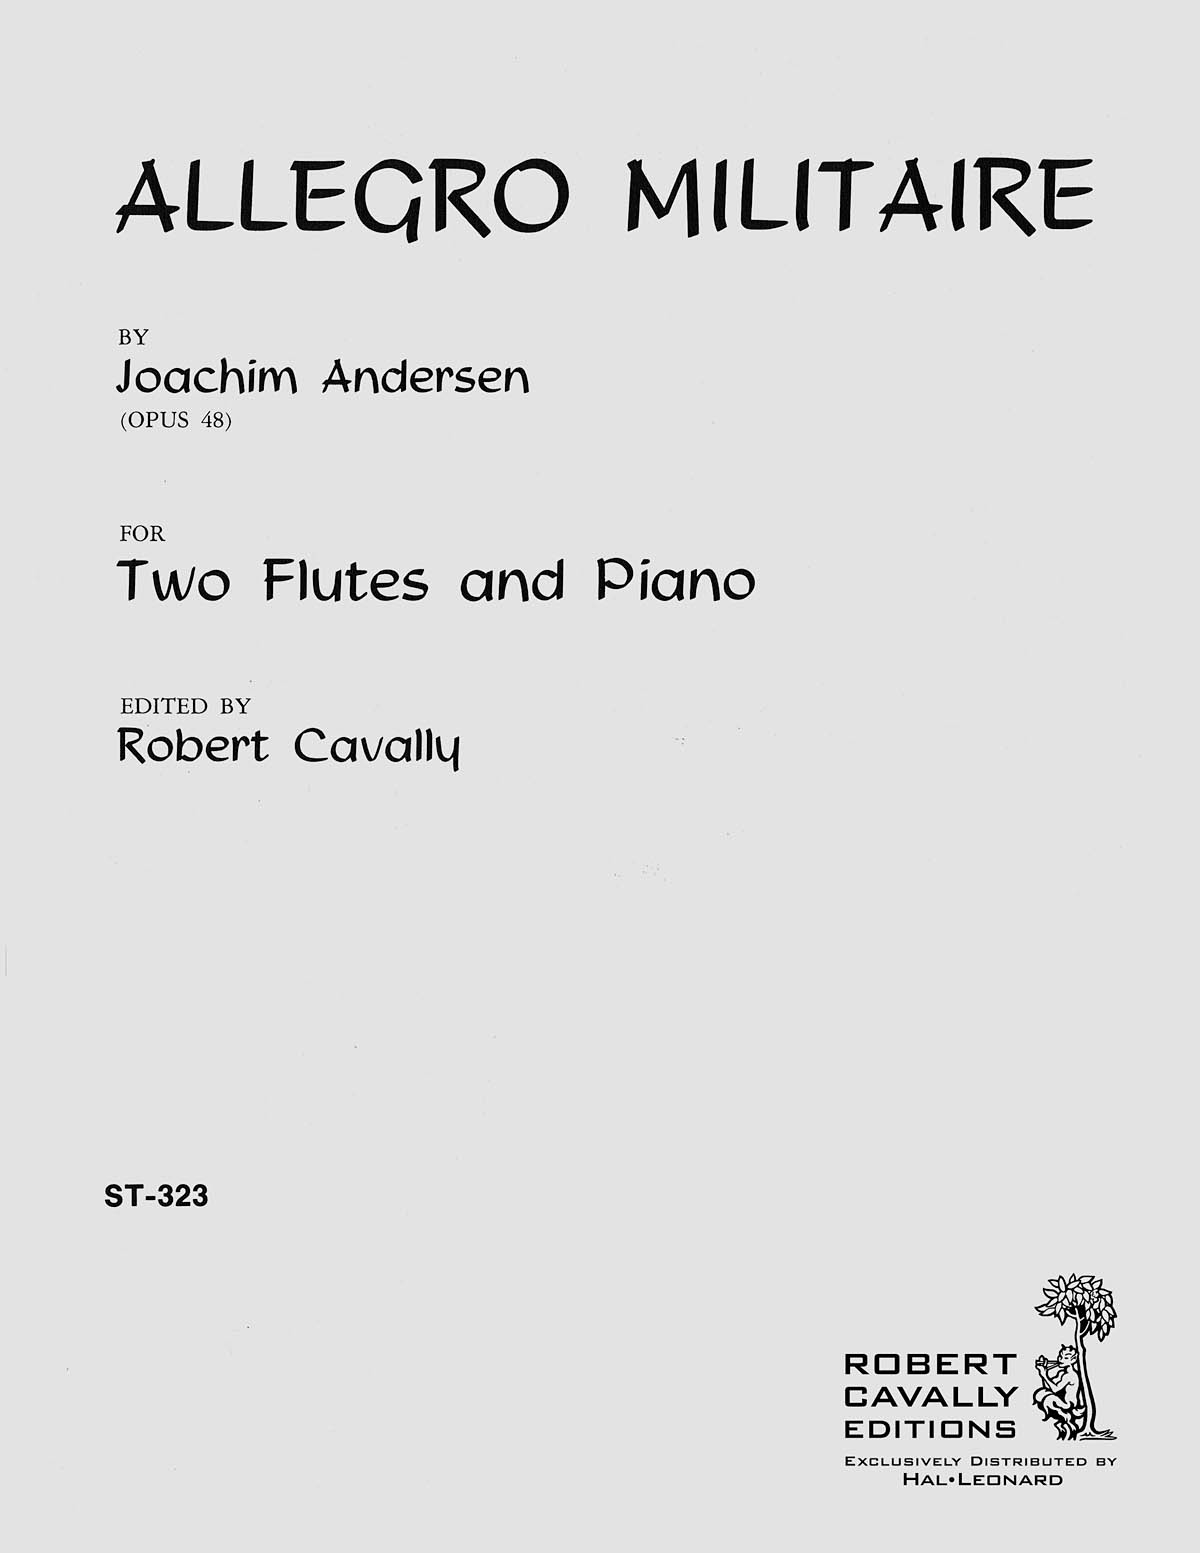 Joachim Andersen: Allegro Militaire